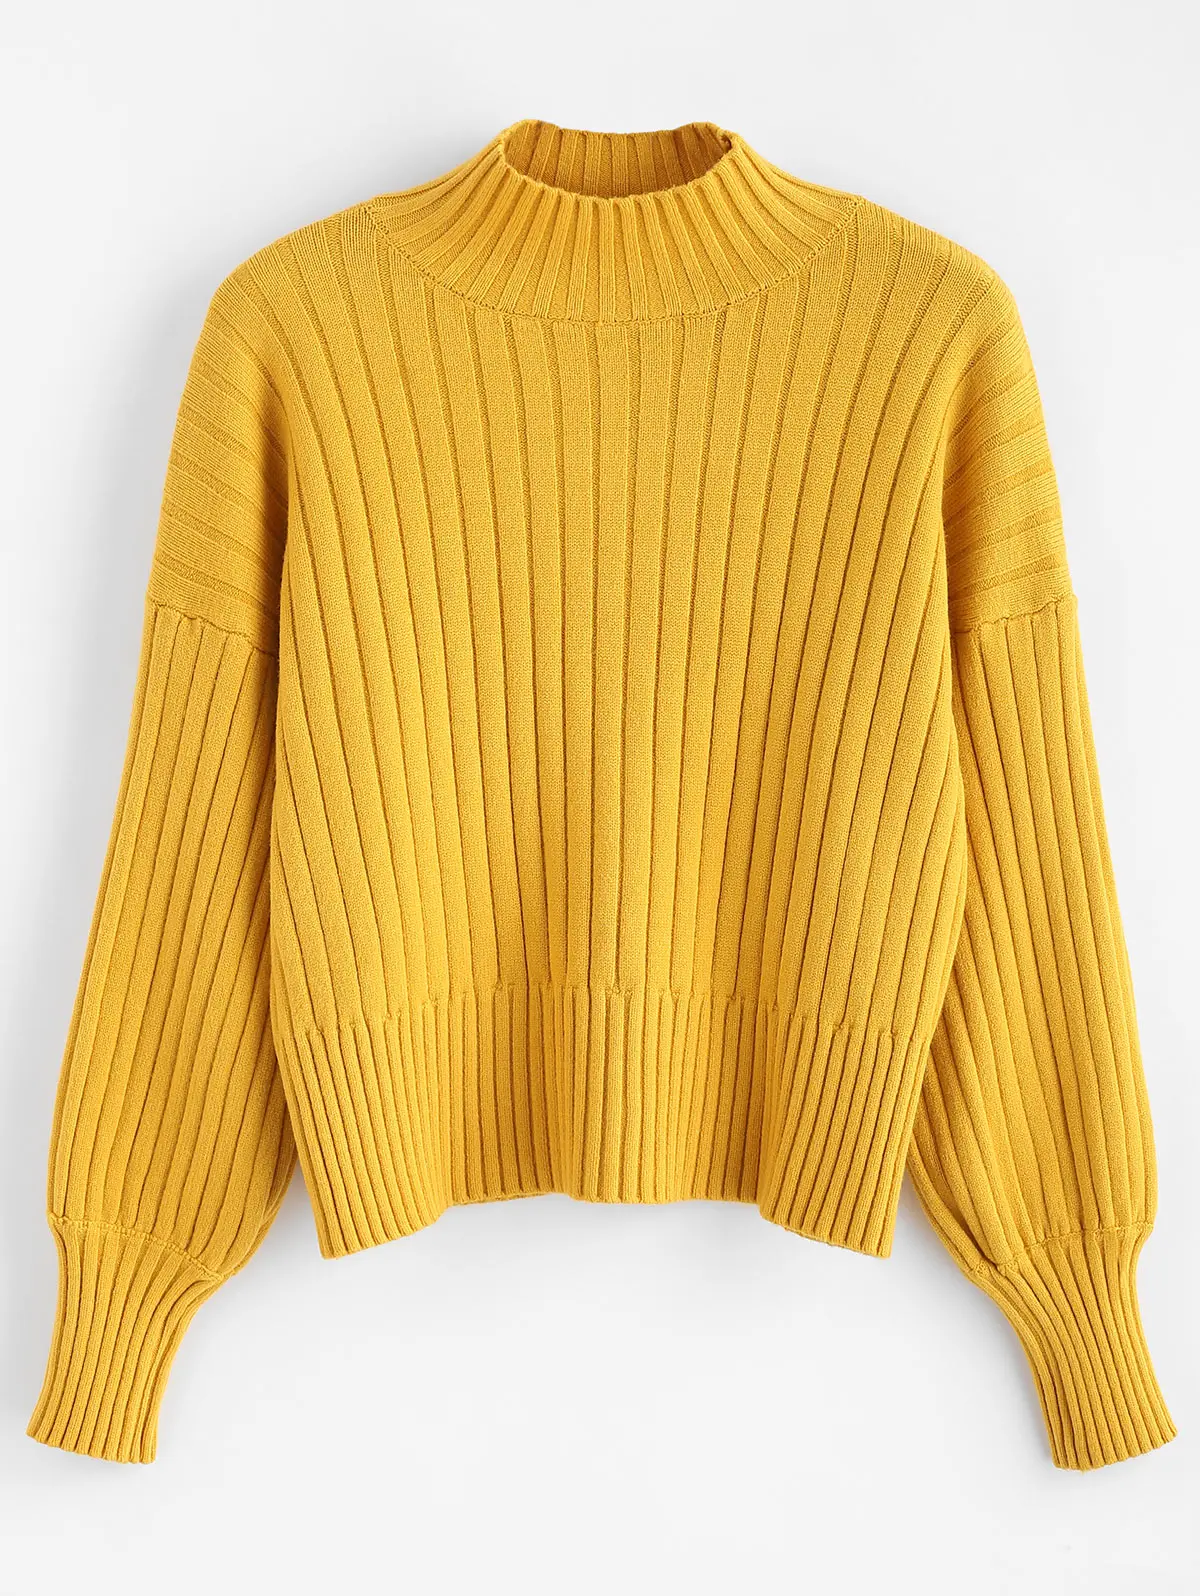 ZAFUL высокое качество толстый теплый зимний женский свитер модный вязаный мягкий пуловер Джемпер осенний женский свитер Топ - Цвет: Mustard